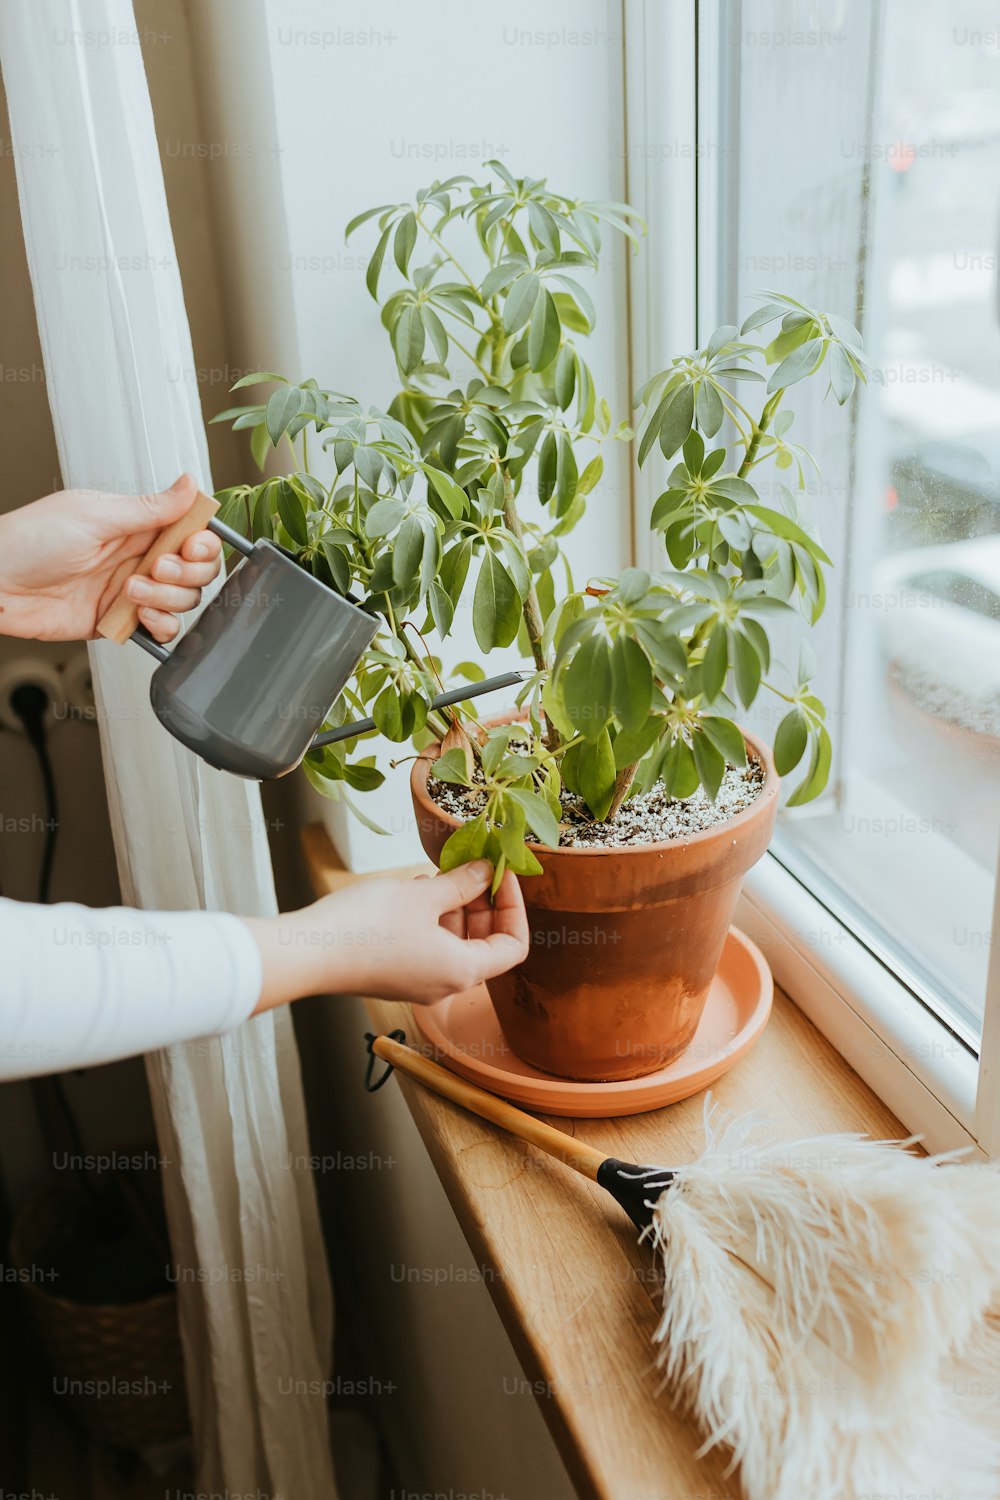 Una mujer está regando una planta en maceta en el alféizar de una ventana